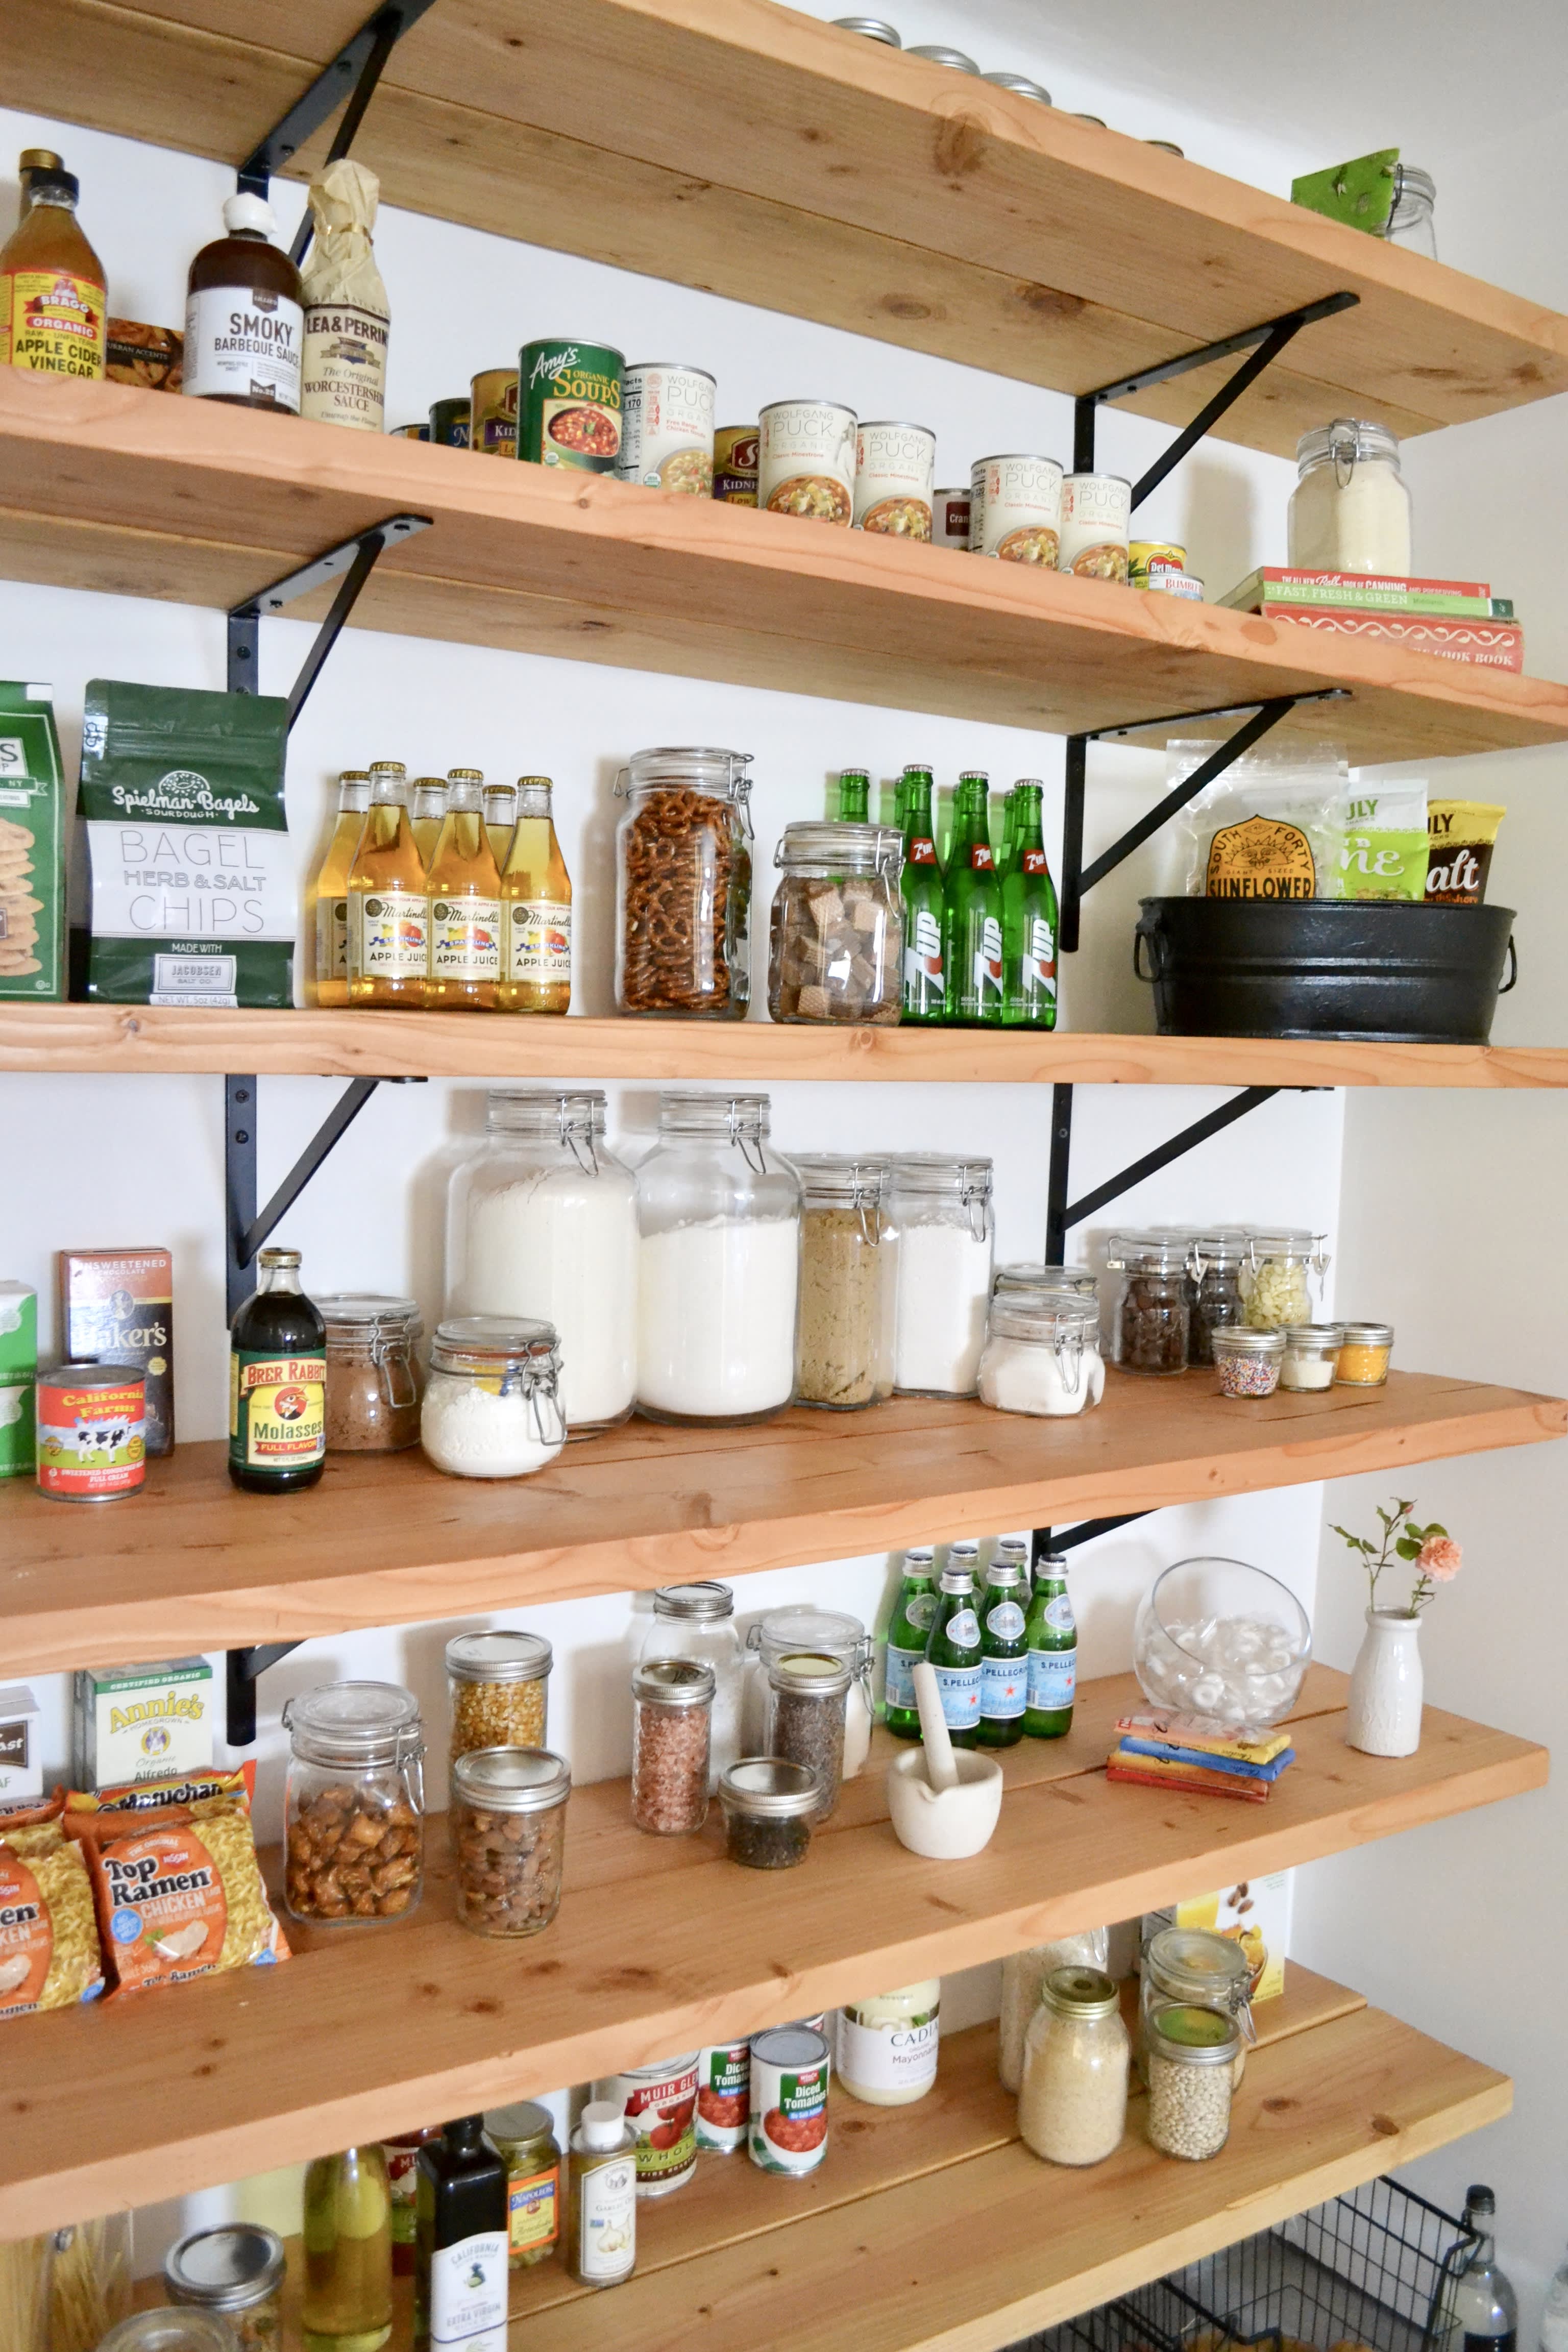 Weenson Kitchen Countertop Organizer Corner Shelf - Kitchen Spice Rack  Organization 2 Tier Free-Standing Counter Storage Space Saving Rack for